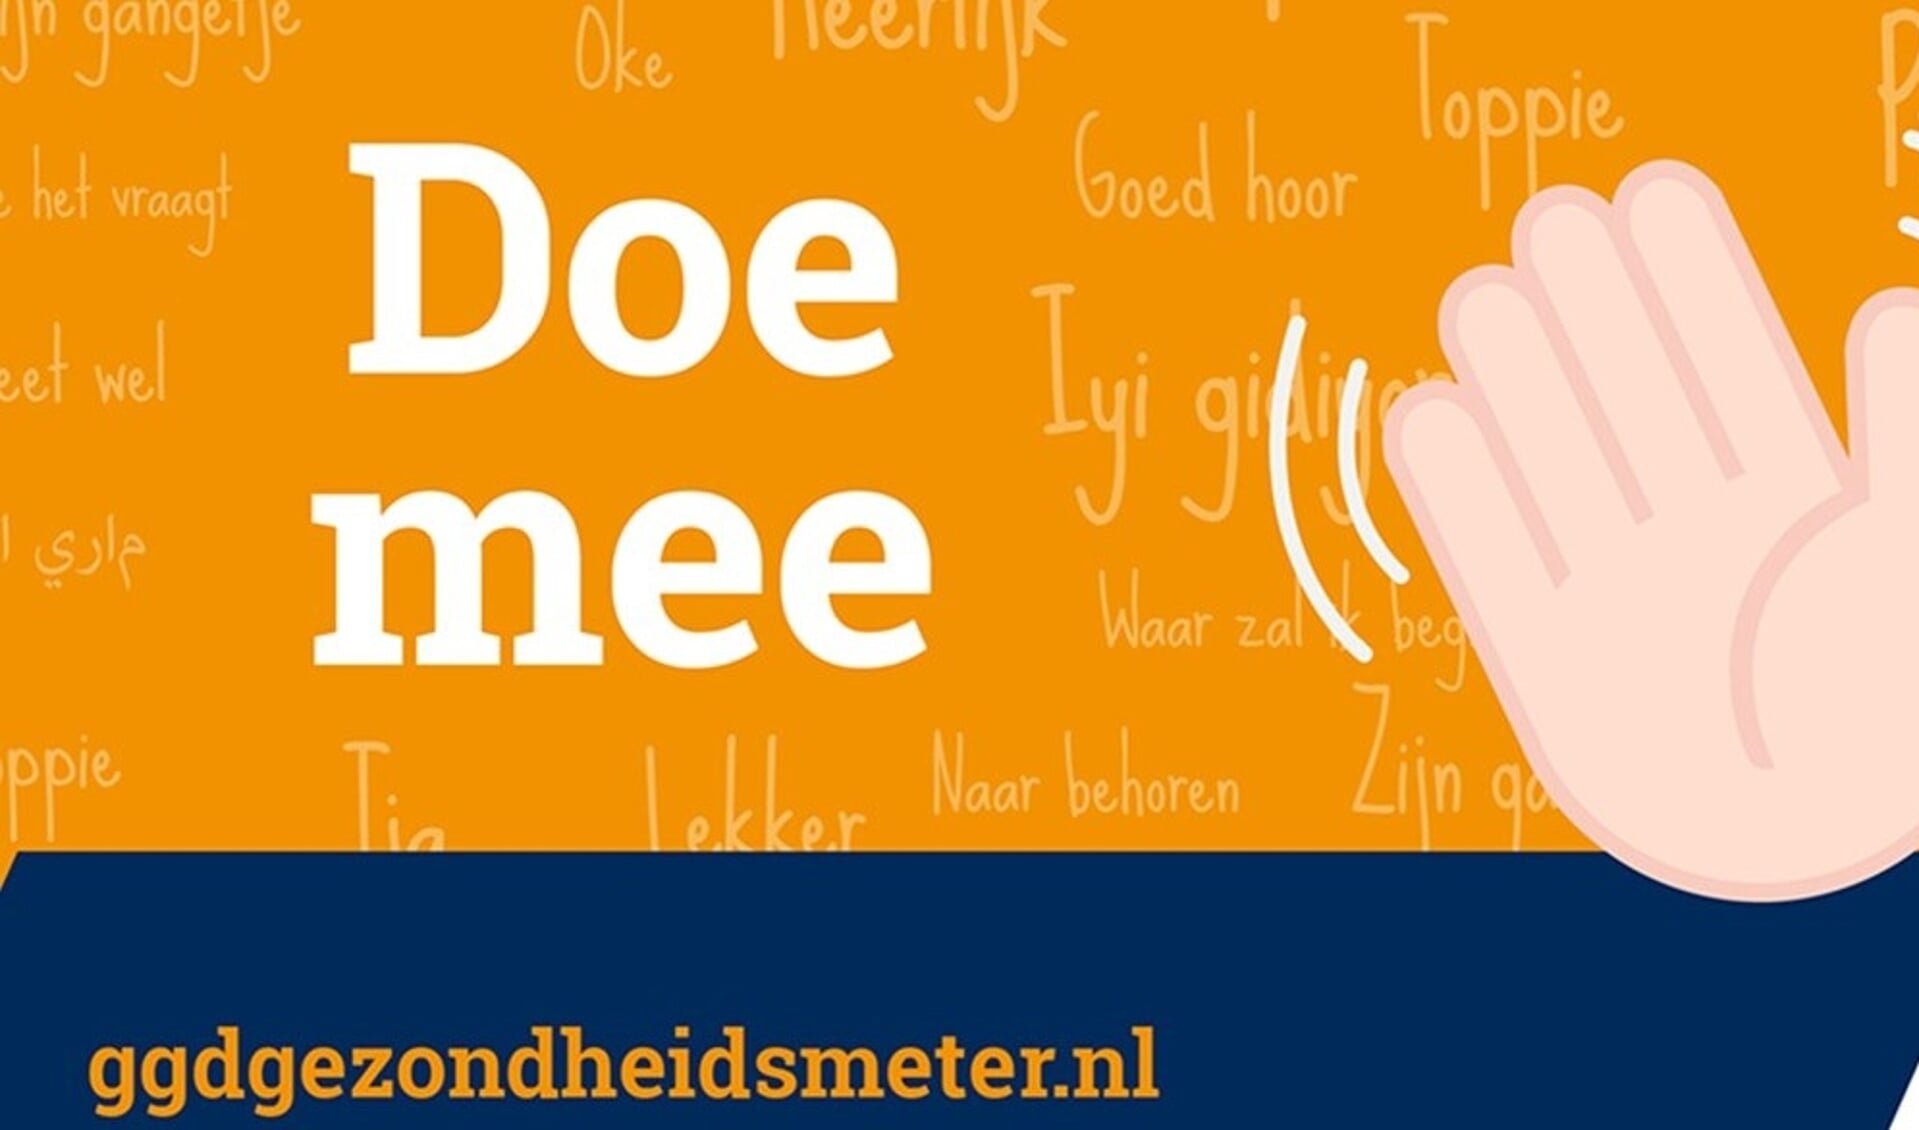 Op 17 september is in Limburg de GGD Gezondheidsmeter 2020 gestart